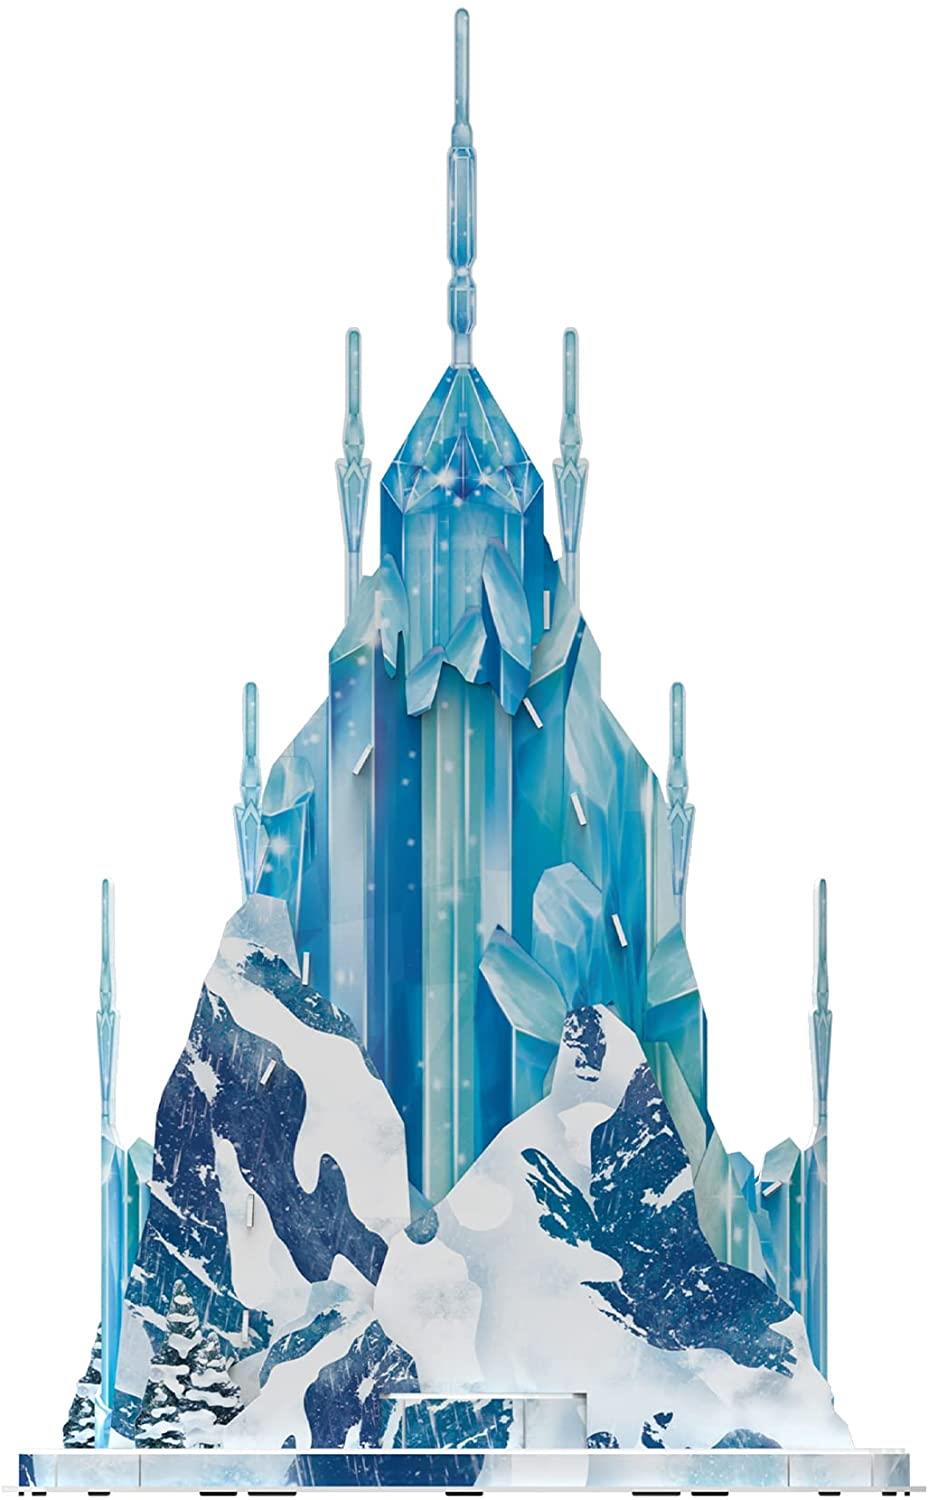 Disney Frozen Elsa's Ice Palace 3D Model Puzzle